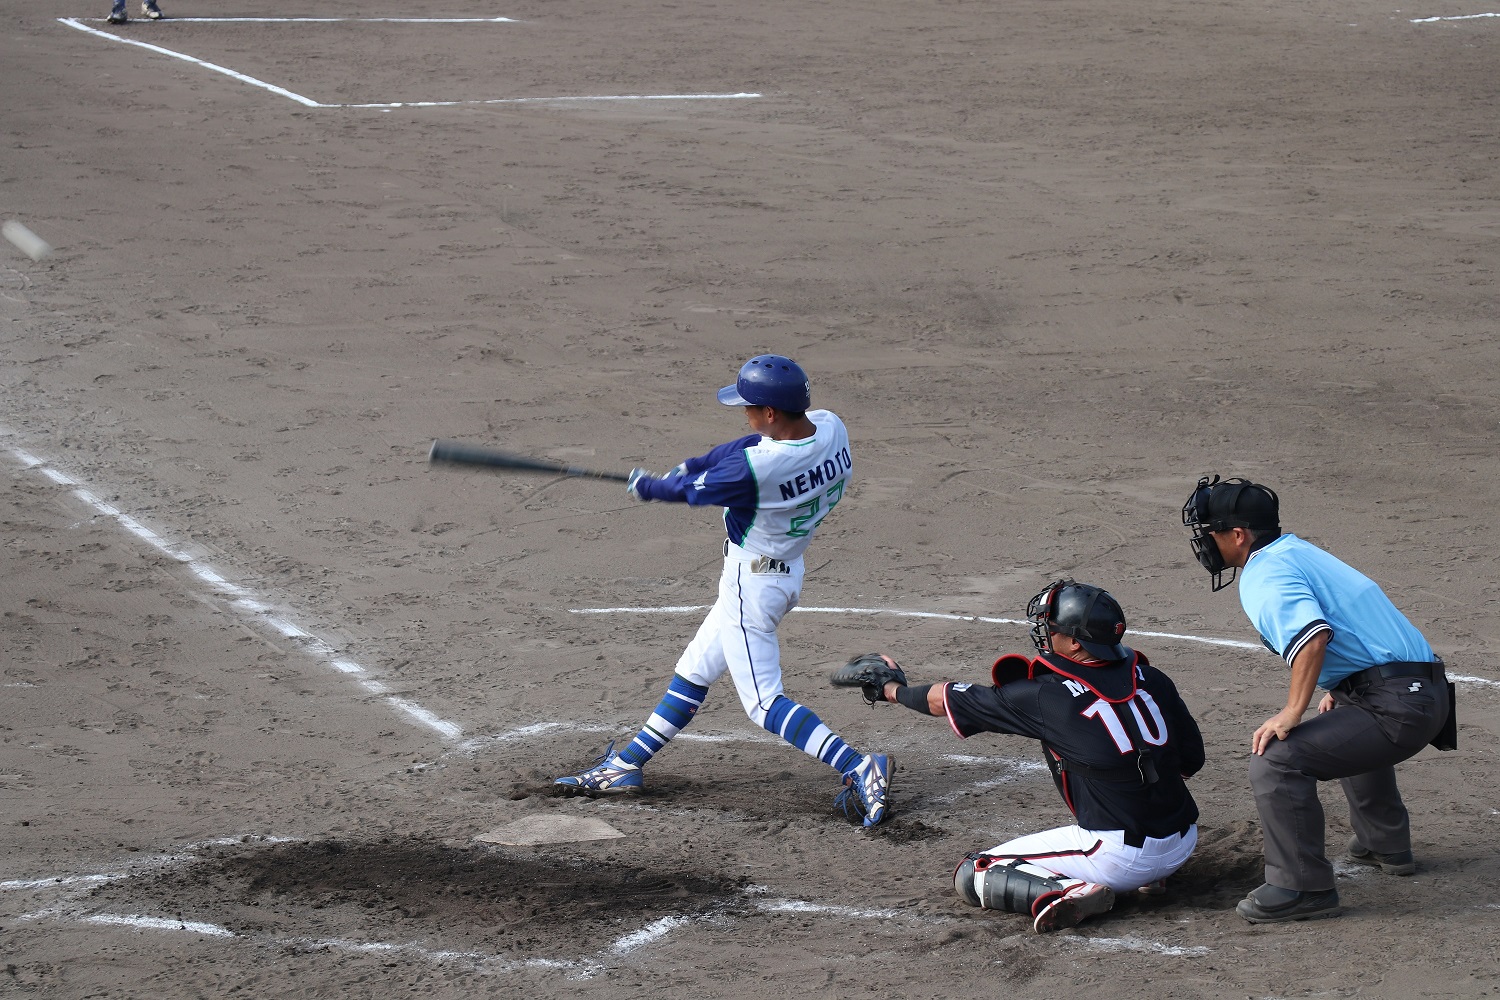 天皇賜杯第78回全日本軟式野球大会エネオストーナメント試合風景